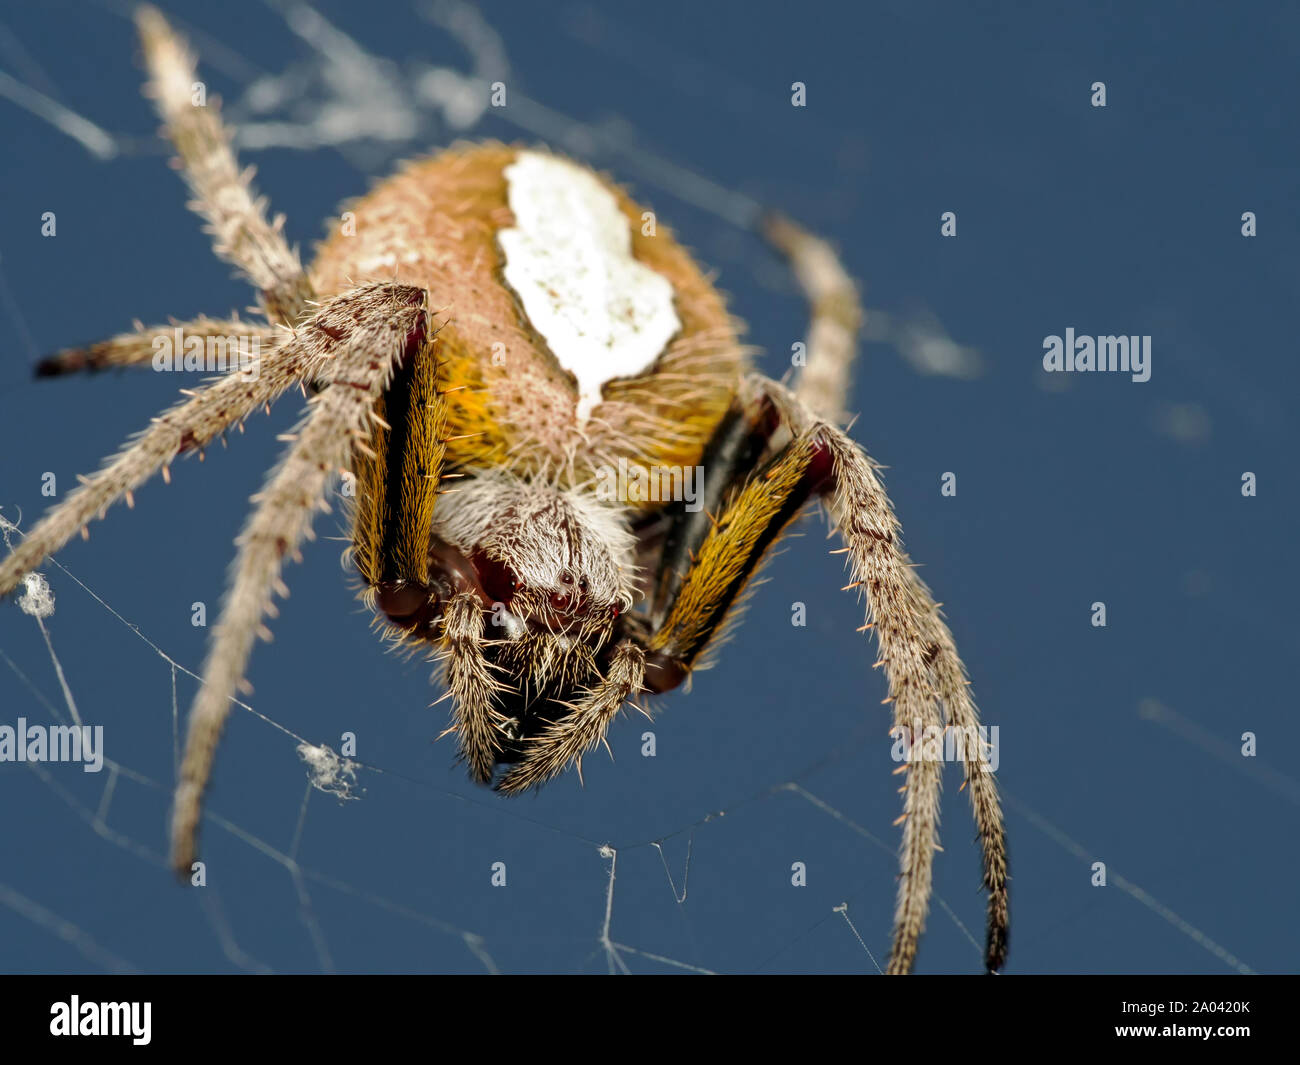 Makroaufnahme eines tropischen Orb weaver Spider, Eriophora ravilla, auf seiner Website. Der Spinne Augen deutlich sichtbar. Stockfoto